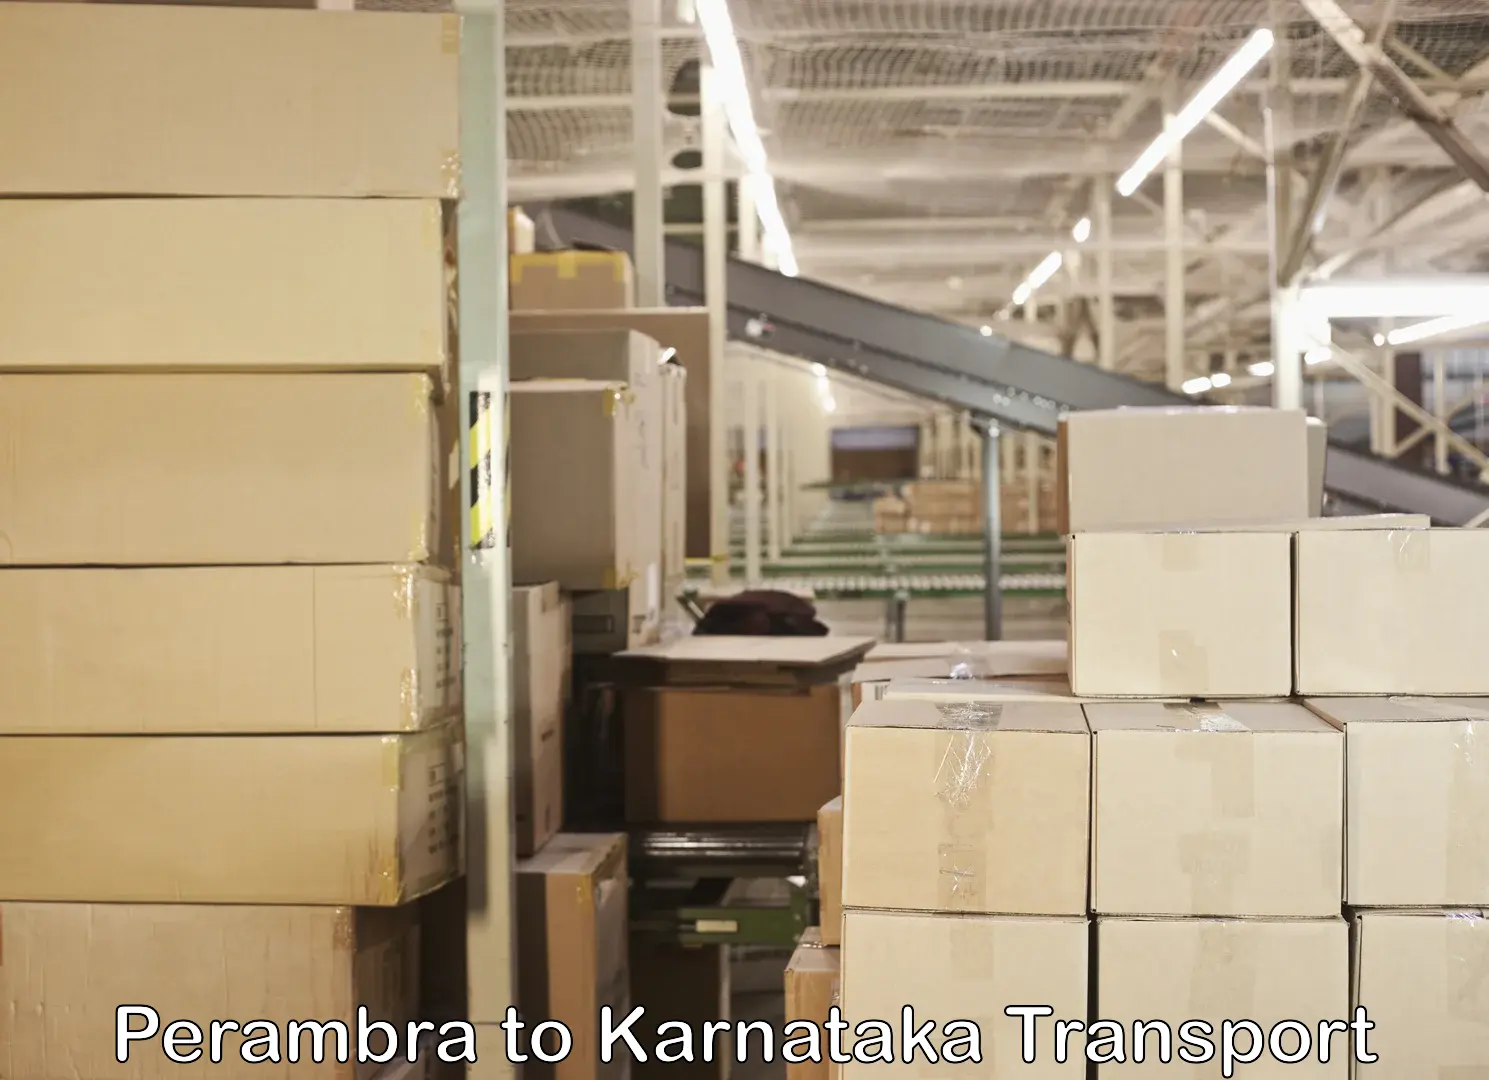 Lorry transport service Perambra to Karnataka